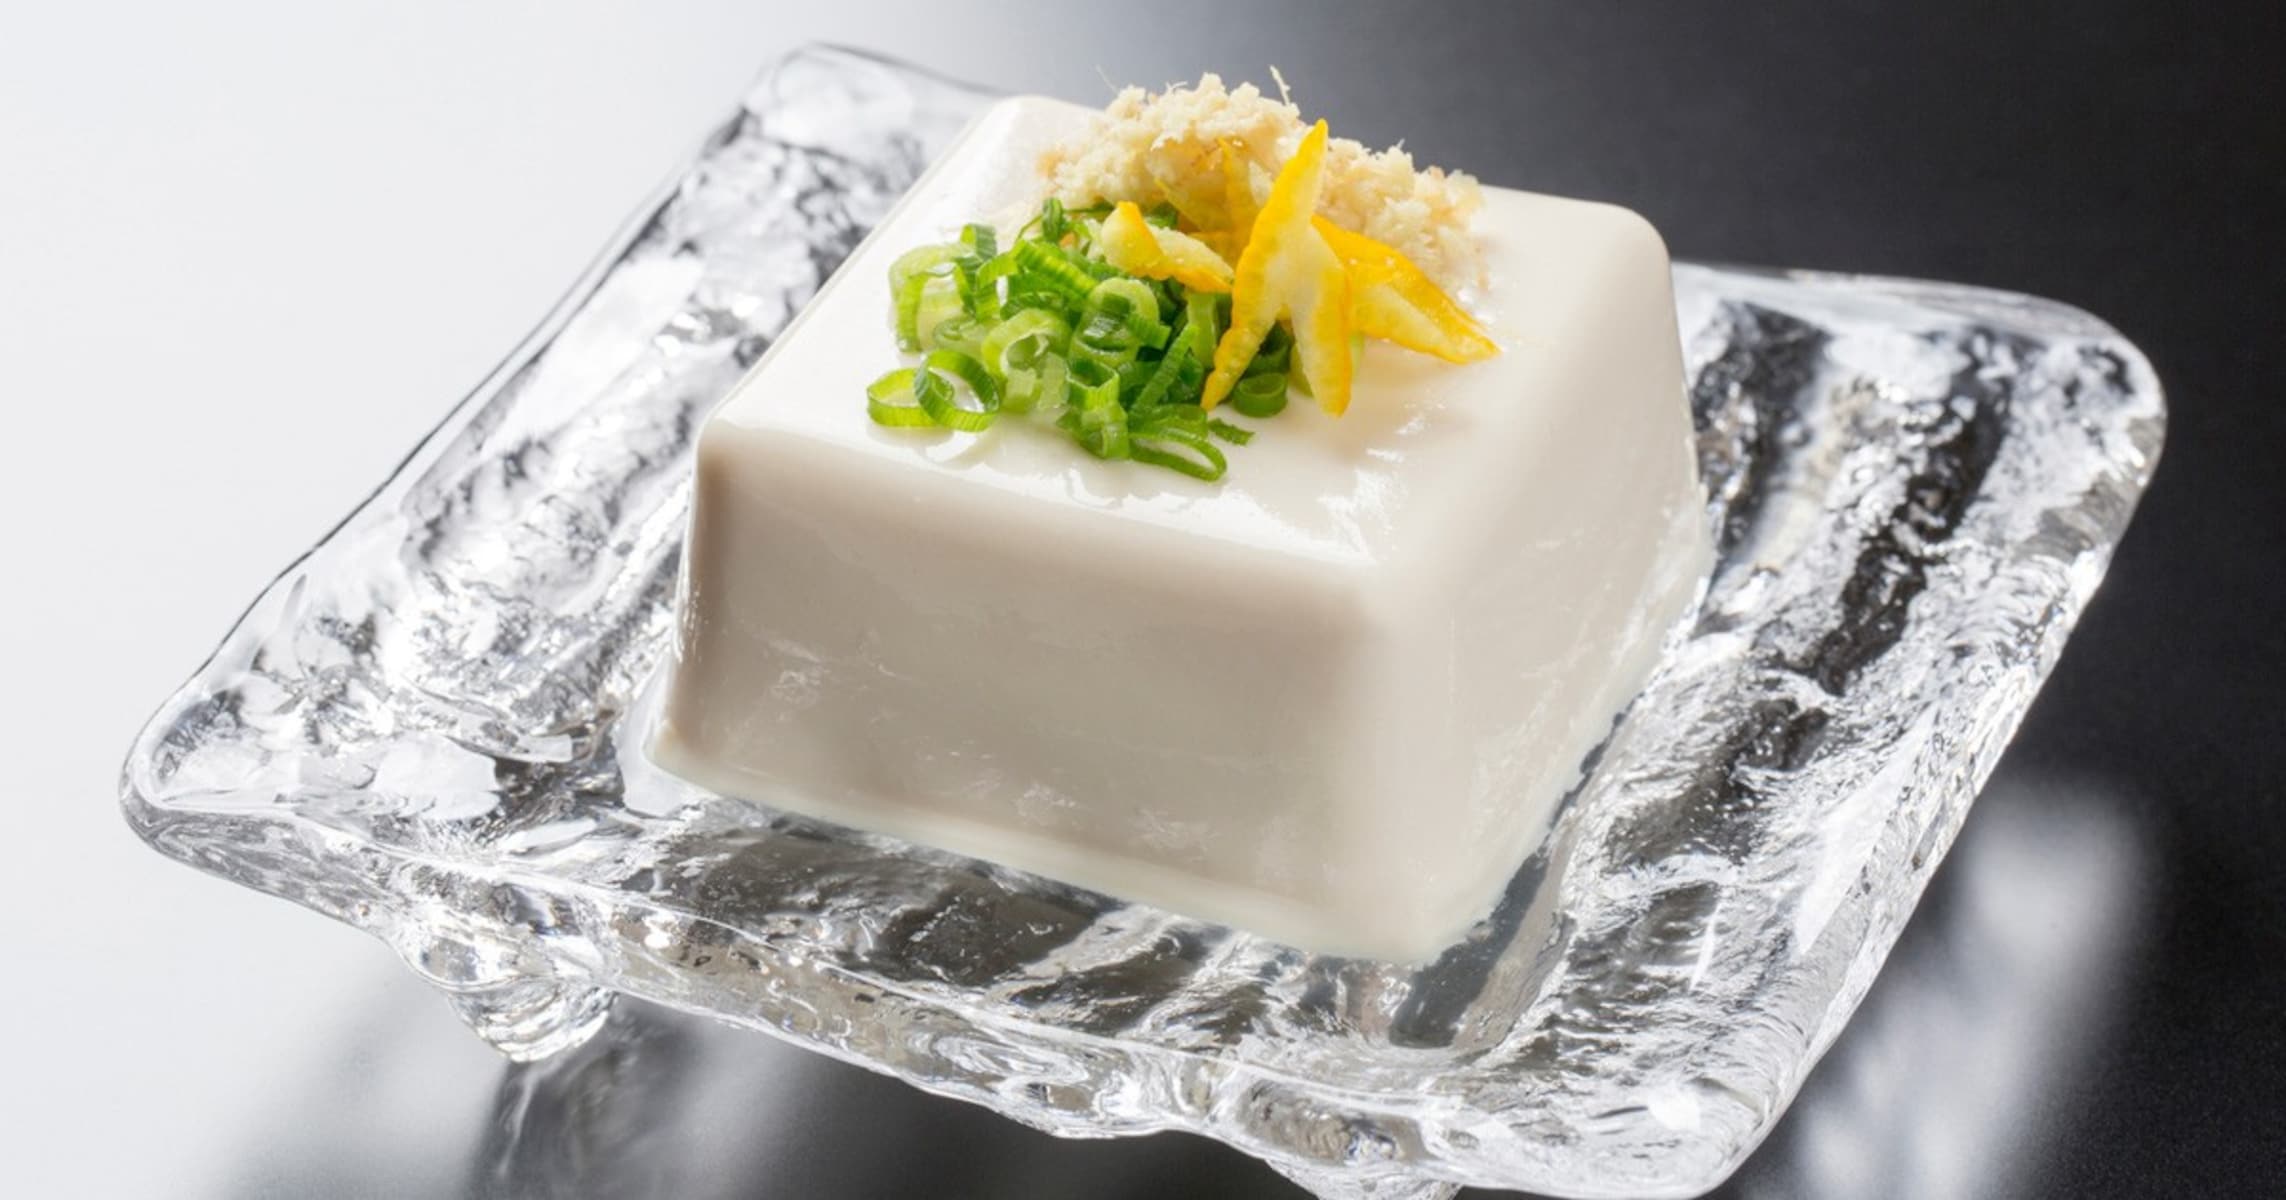 豆腐の常温販売が解禁！ 「豆腐は足が早い説」はなぜ広まったのか？